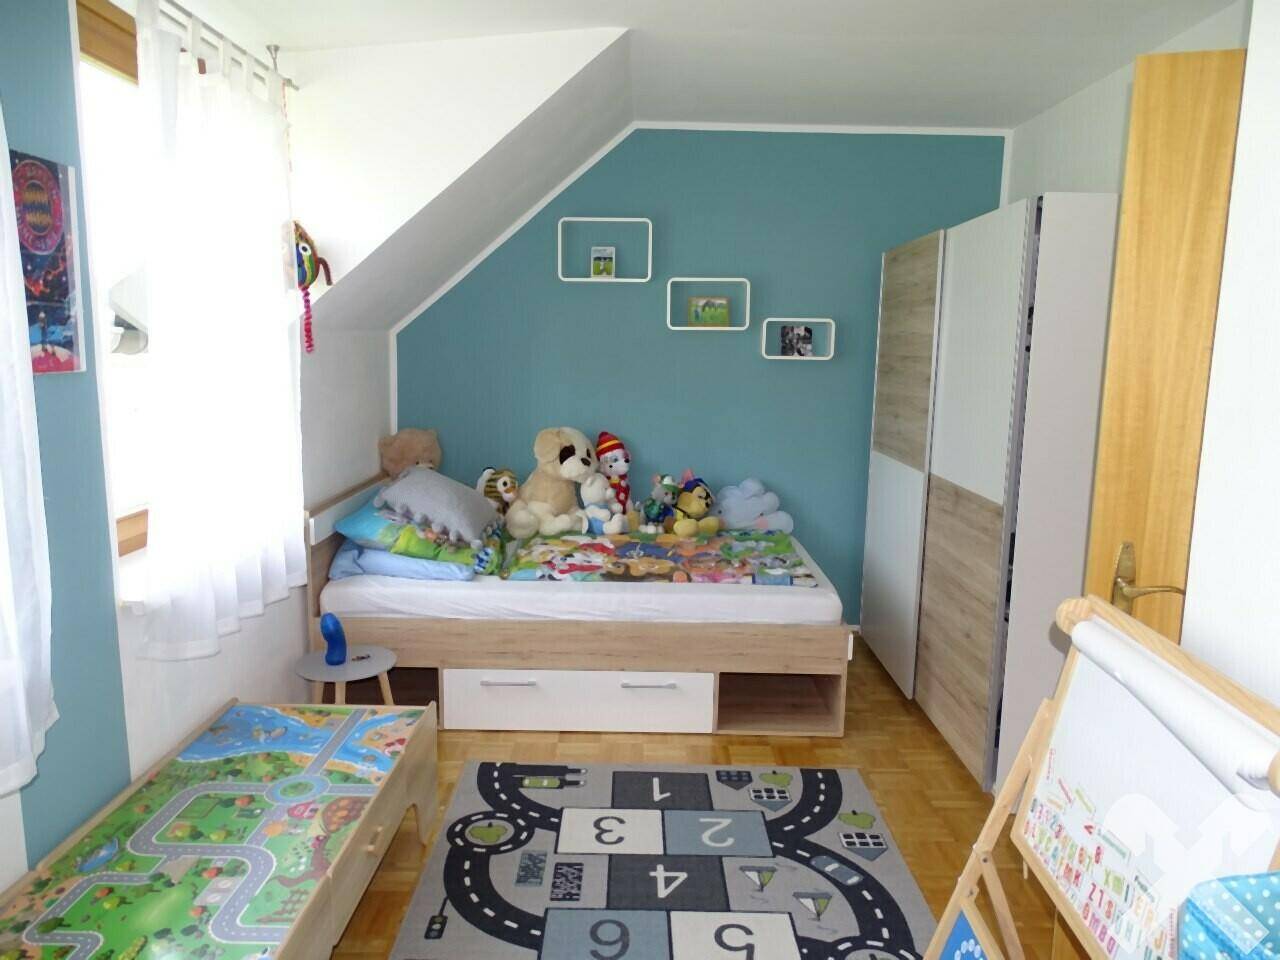 Kinderzimmer/Schlafzimmer